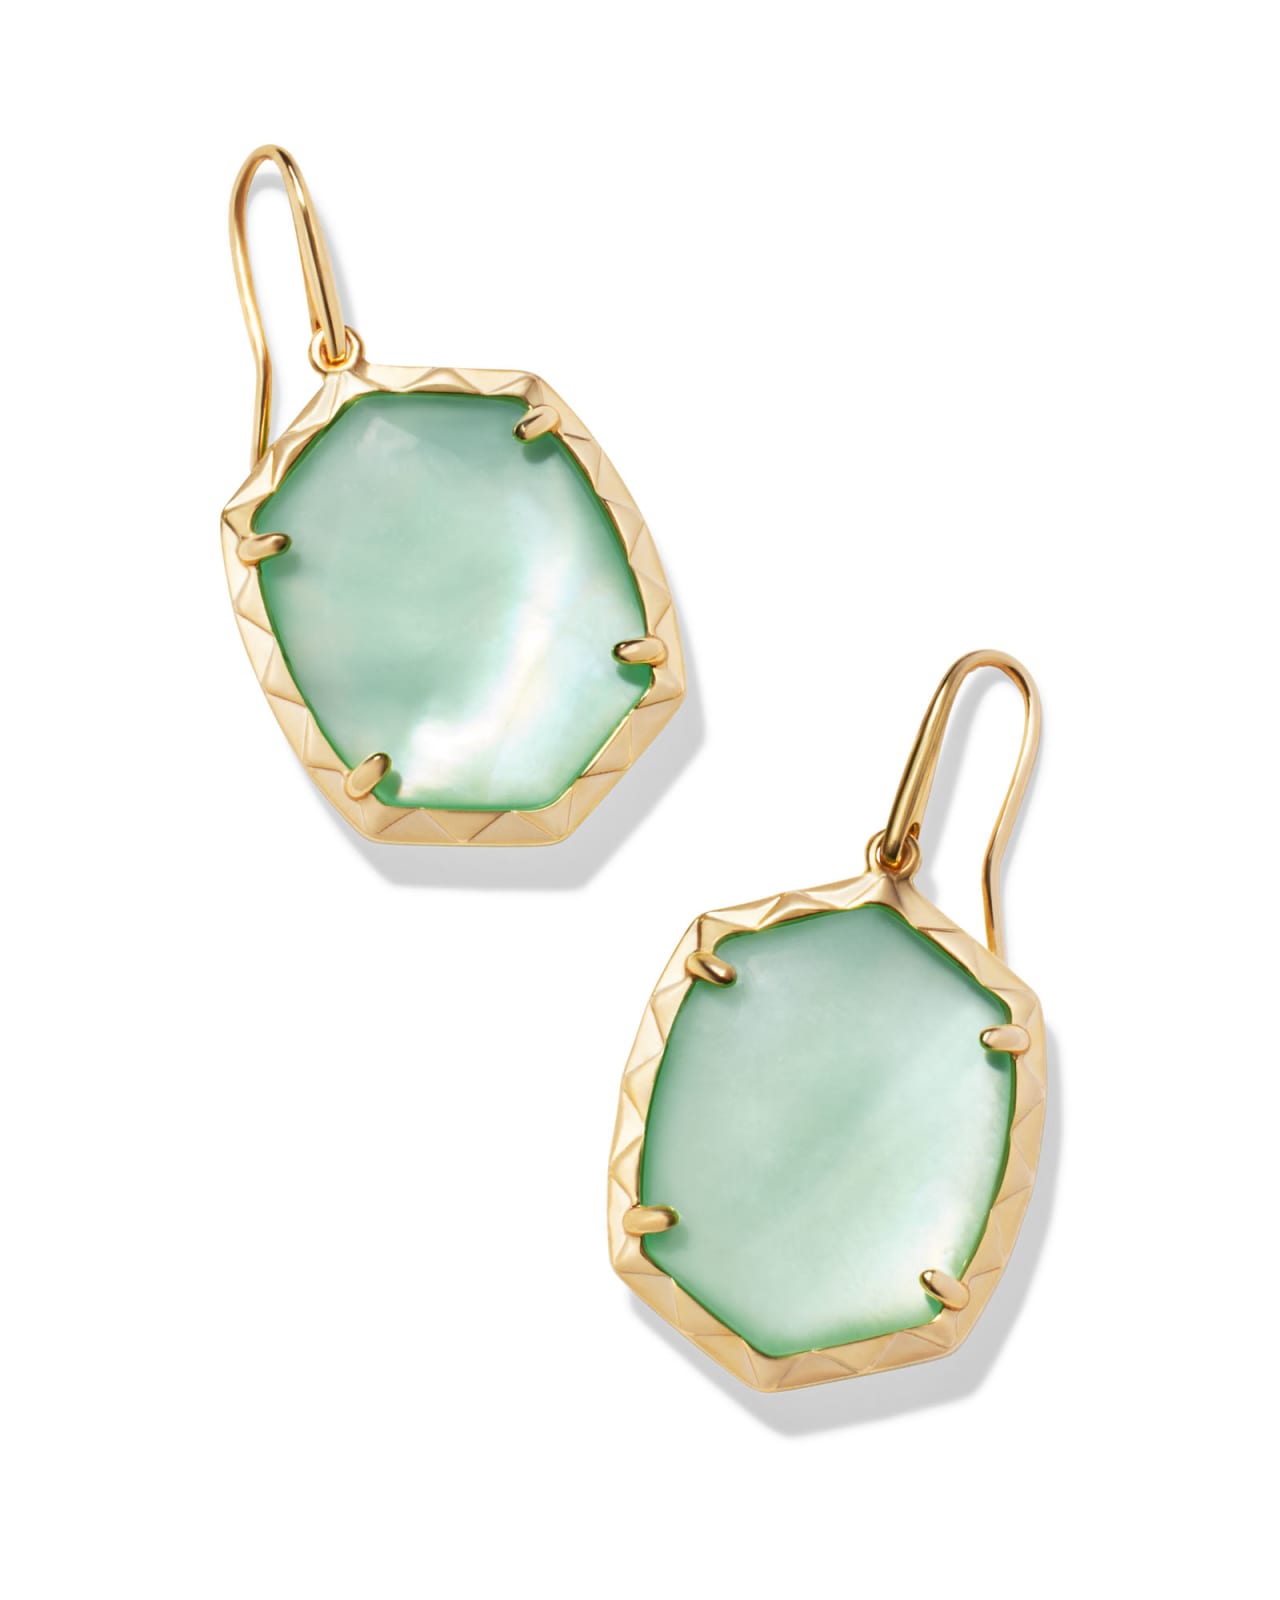 Daphne Gold Drop Earrings in Light Green Mother-of-Pearl | Kendra Scott